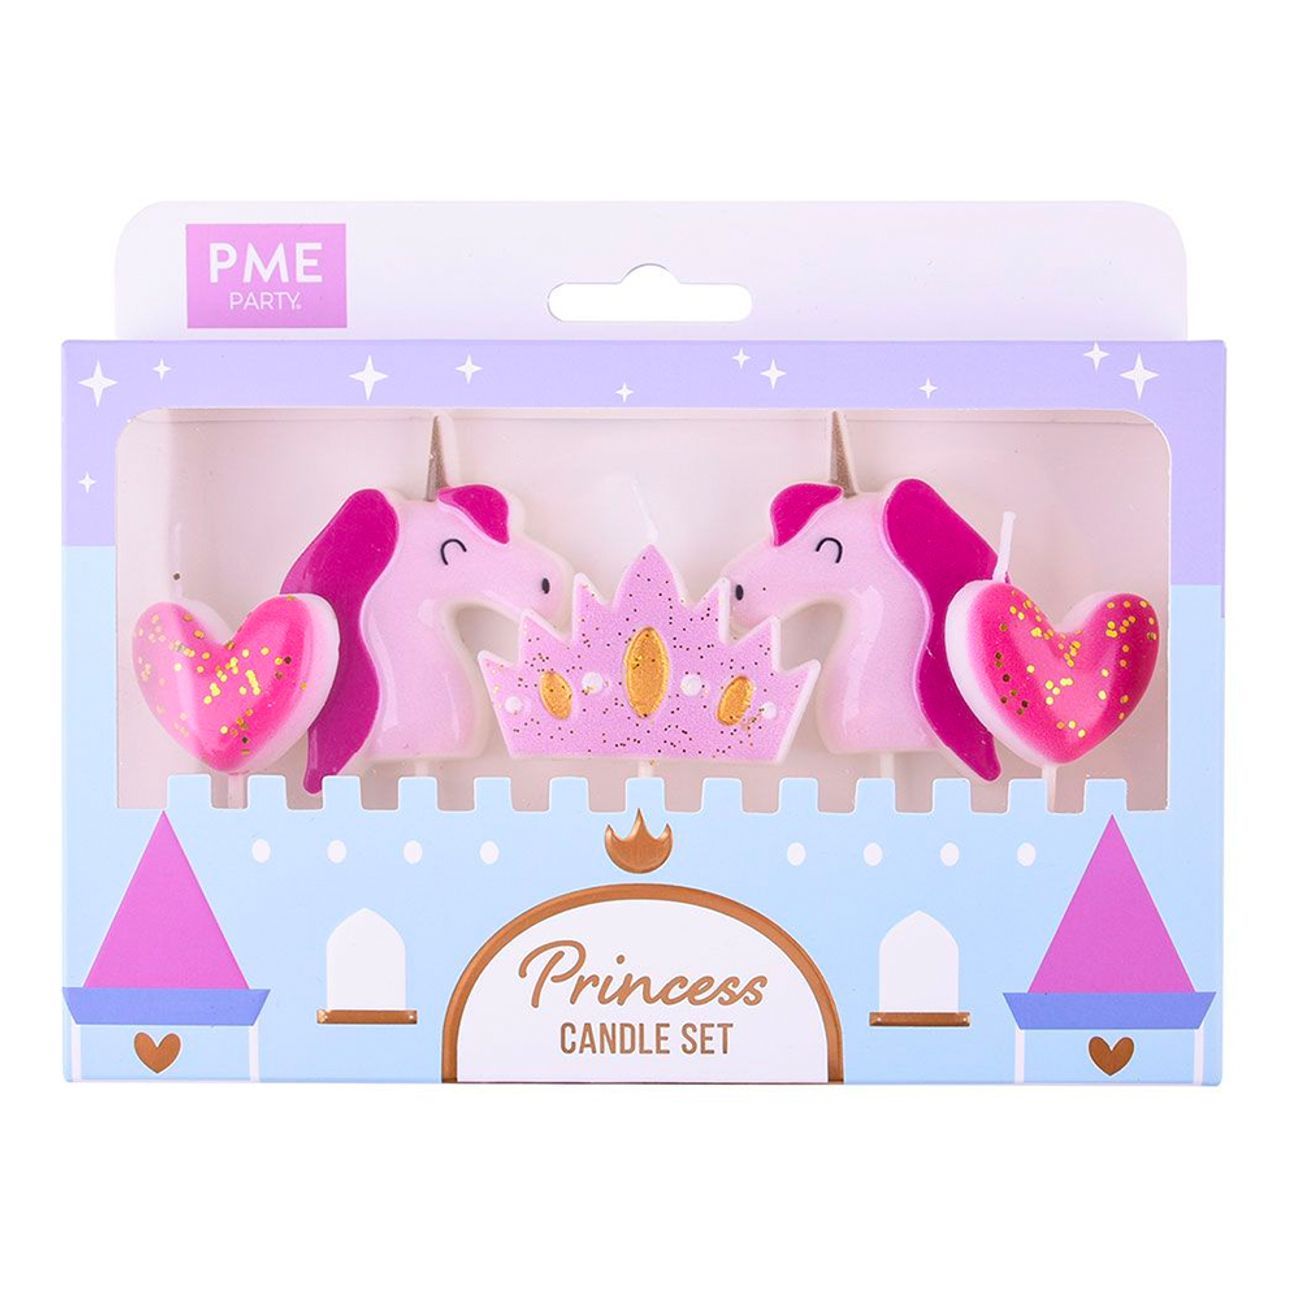 pme-tartljus-prinsessa-84886-3